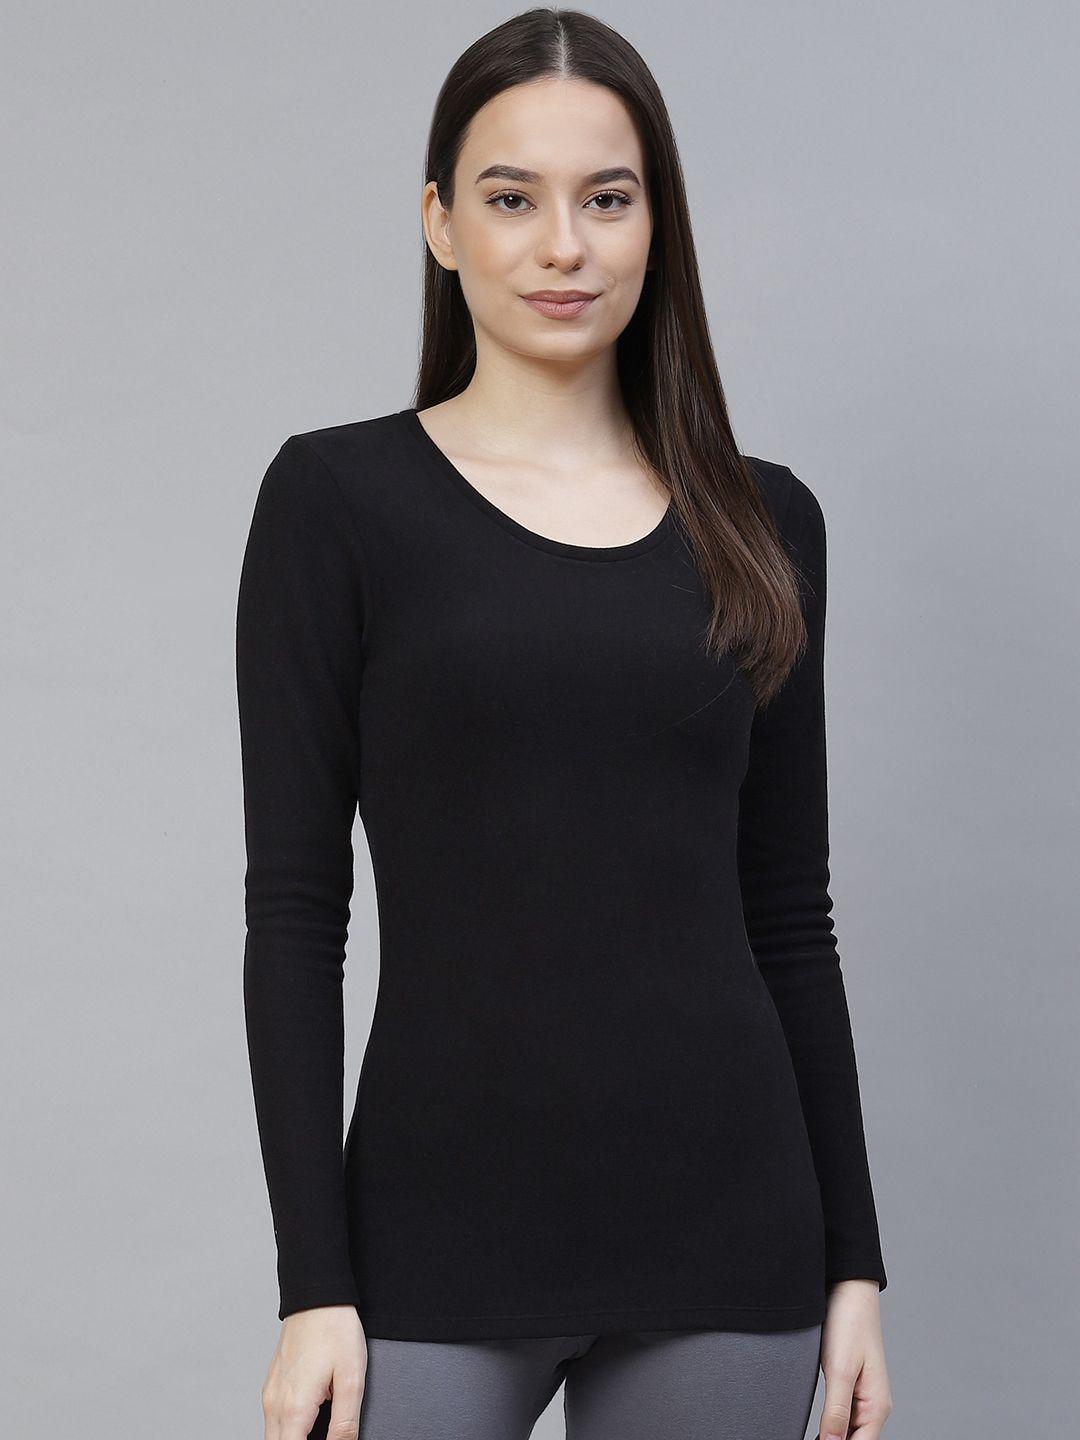 marks & spencer women black solid full sleeved thermal tops